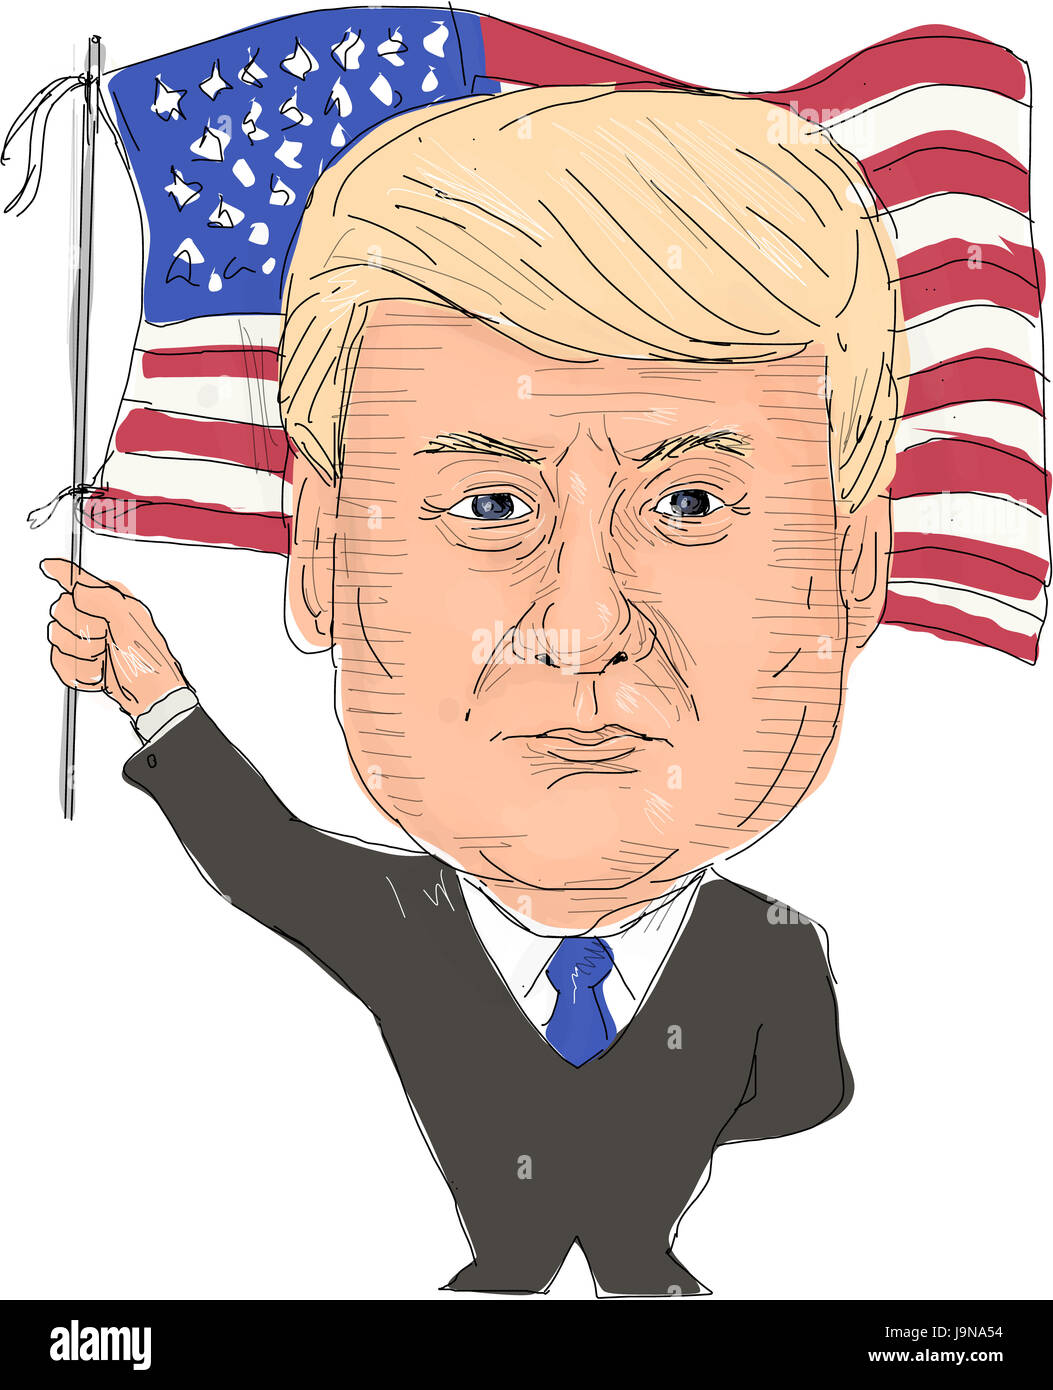 Junio 2, 2017: estilo de acuarela ilustración de Donald Trump, Presidente de los Estados Unidos de América banderas ondeantes, visto desde la parte delantera en aislados w Foto de stock